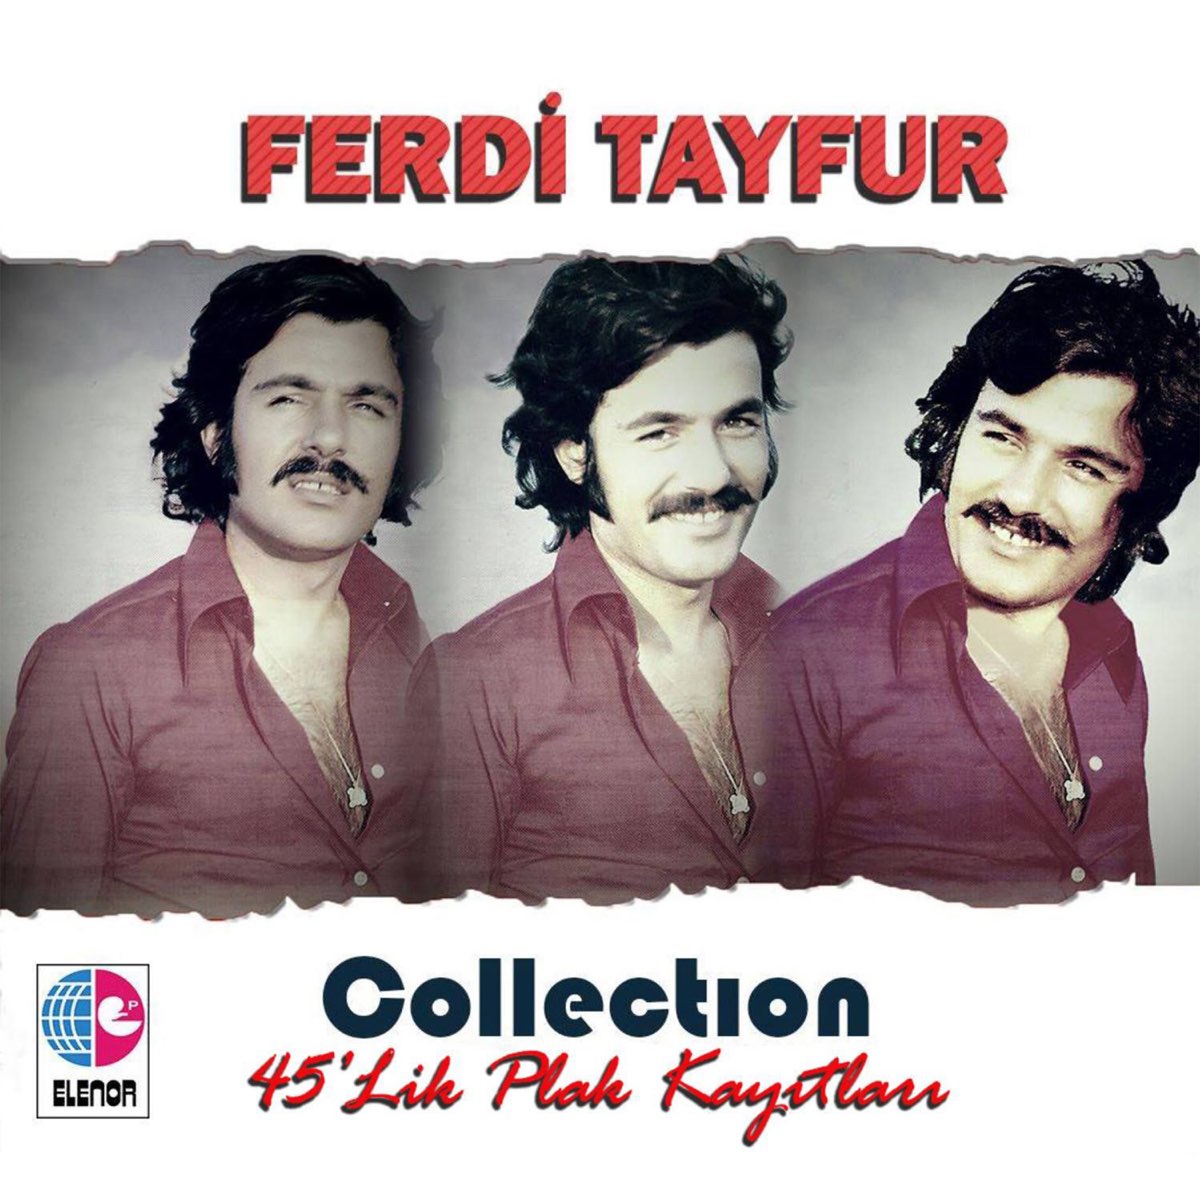 Collection, Vol. 2 / 45'lik Plak Kayıtları by Ferdi Tayfur on Apple Music